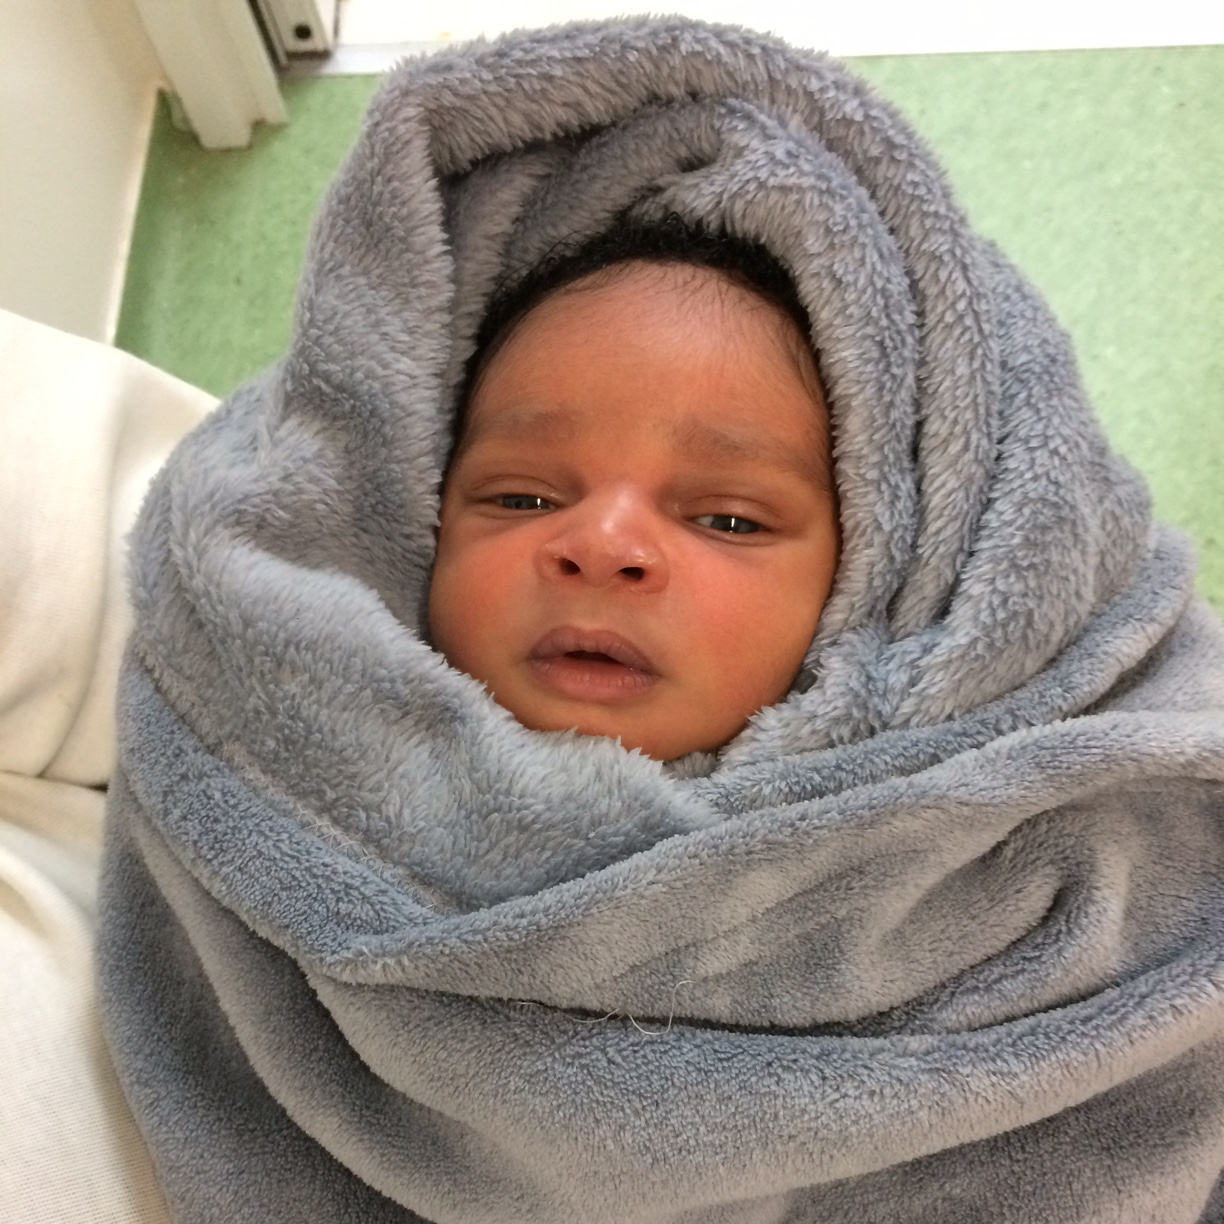 Success una neonata di 5 giorni sopravvissuta alla Libia e alla traversata del Mediterraneo